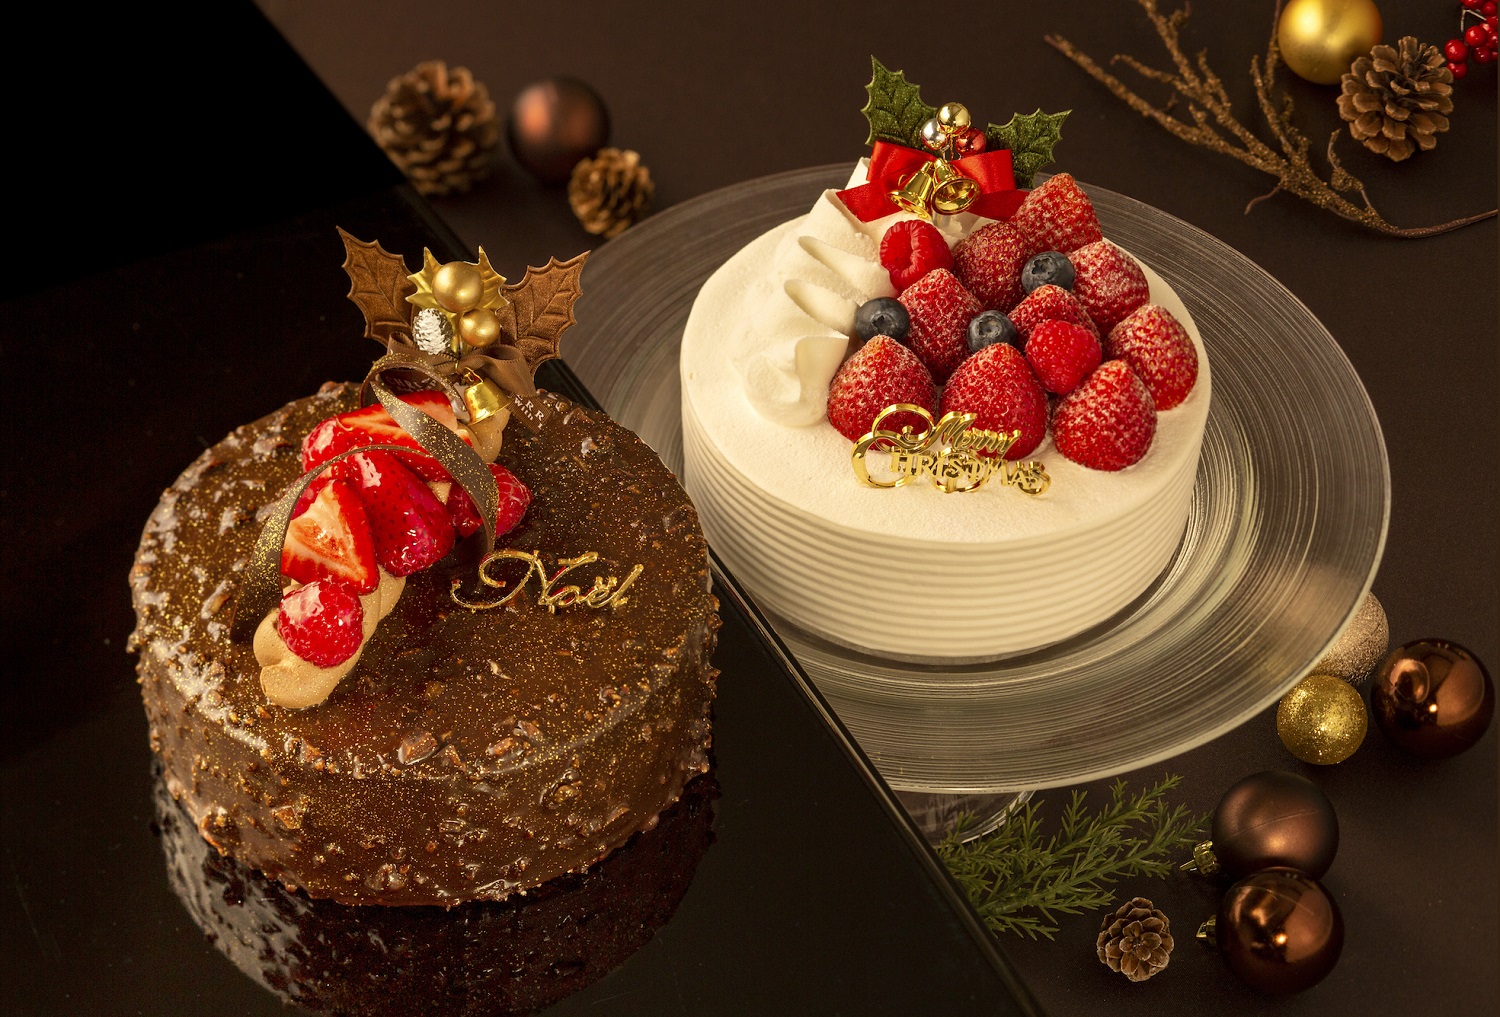 クリスマス18 パティシエ特製ケーキを販売 ご予約受付中 天神 大名の自然派イタリアン リストランテ カノビアーノ福岡 公式